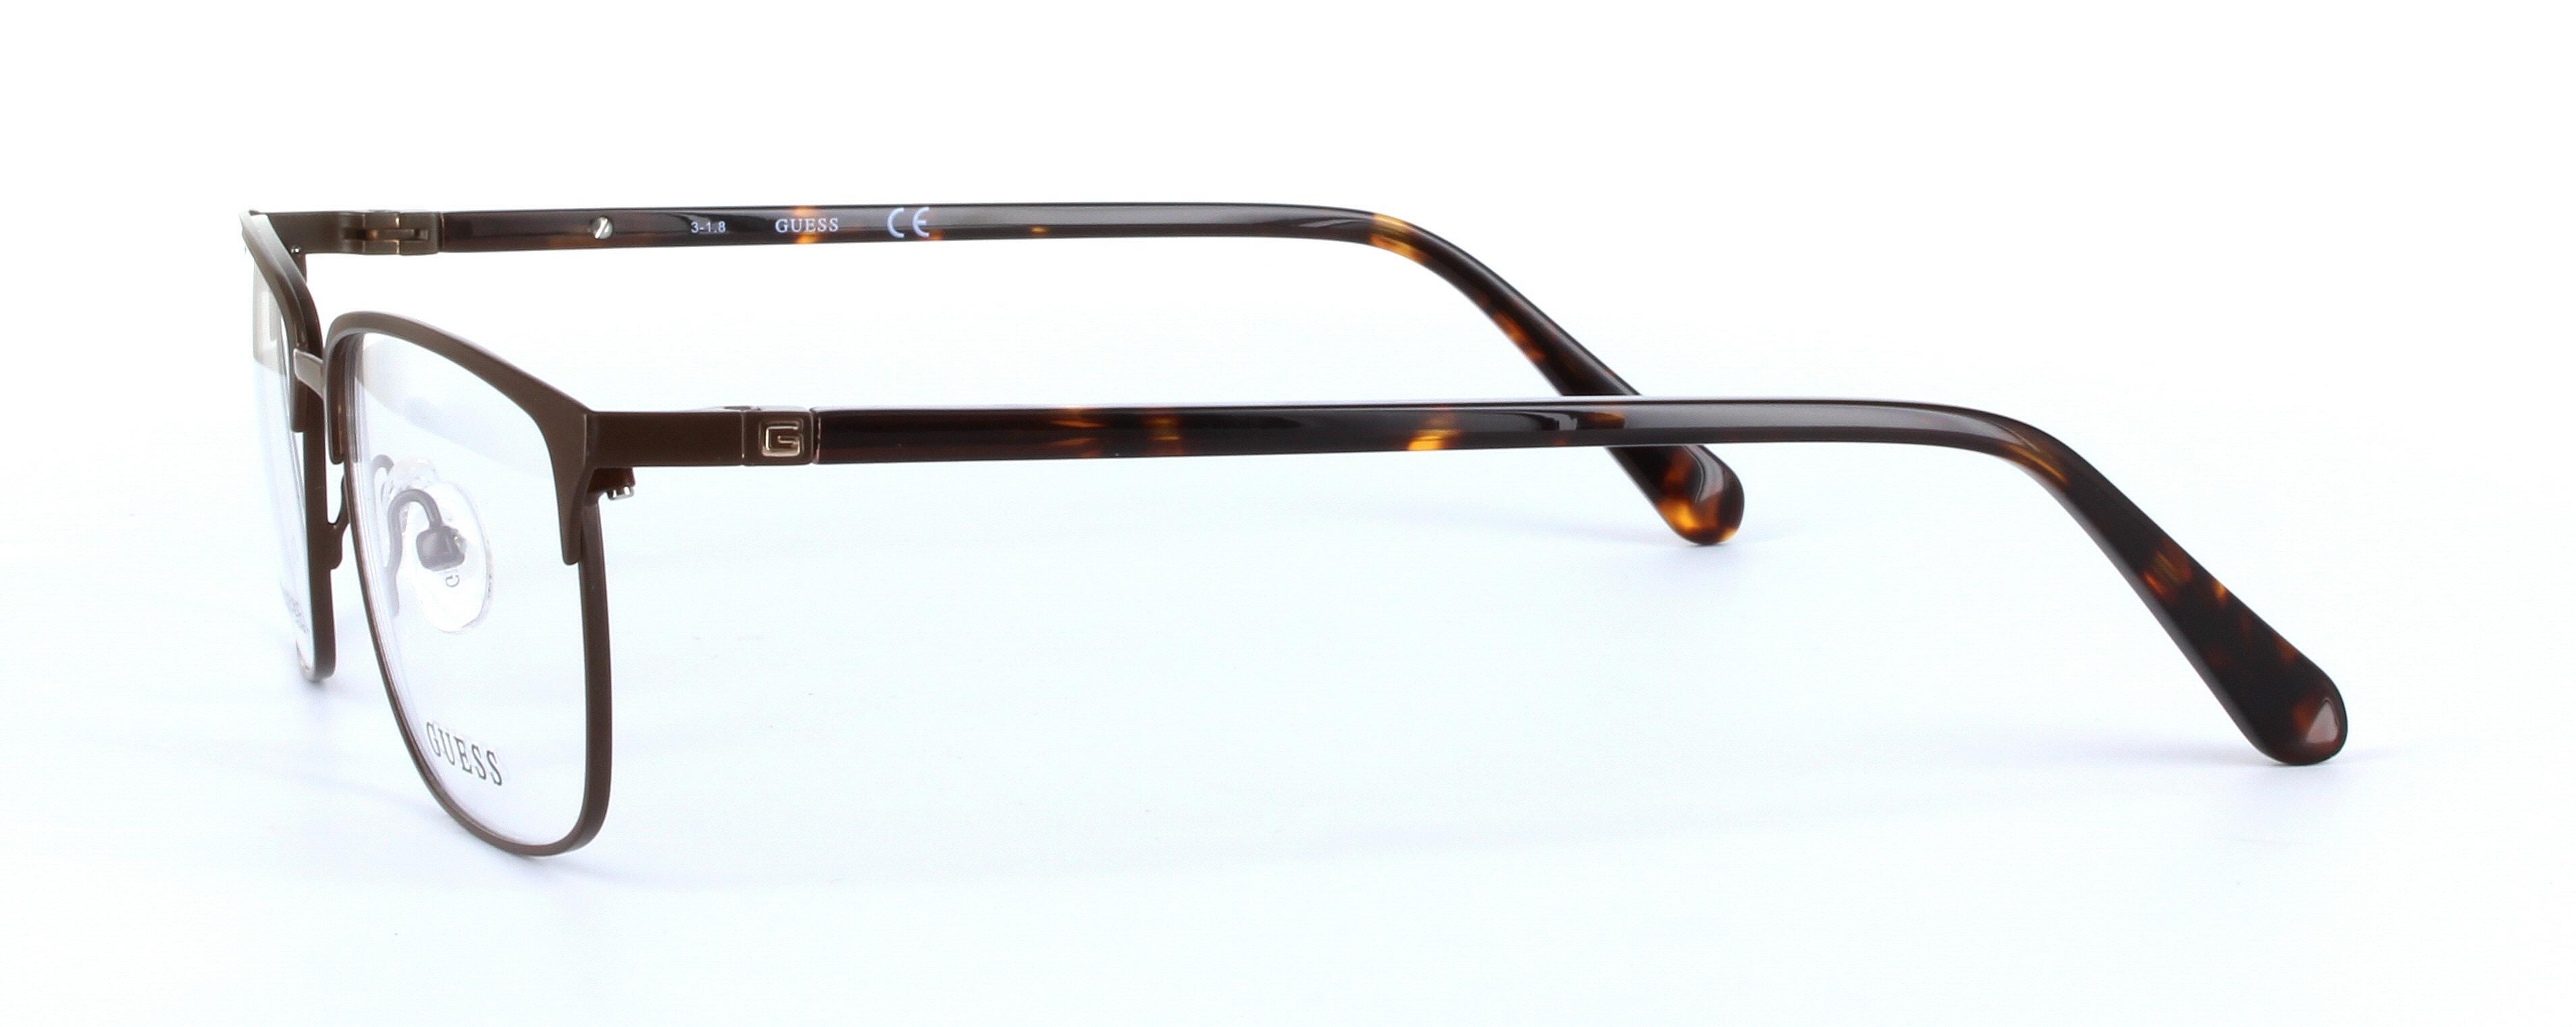 GUESS (GU1890-049) Brown Full Rim Oval Rectangular Metal Glasses - Image View 2